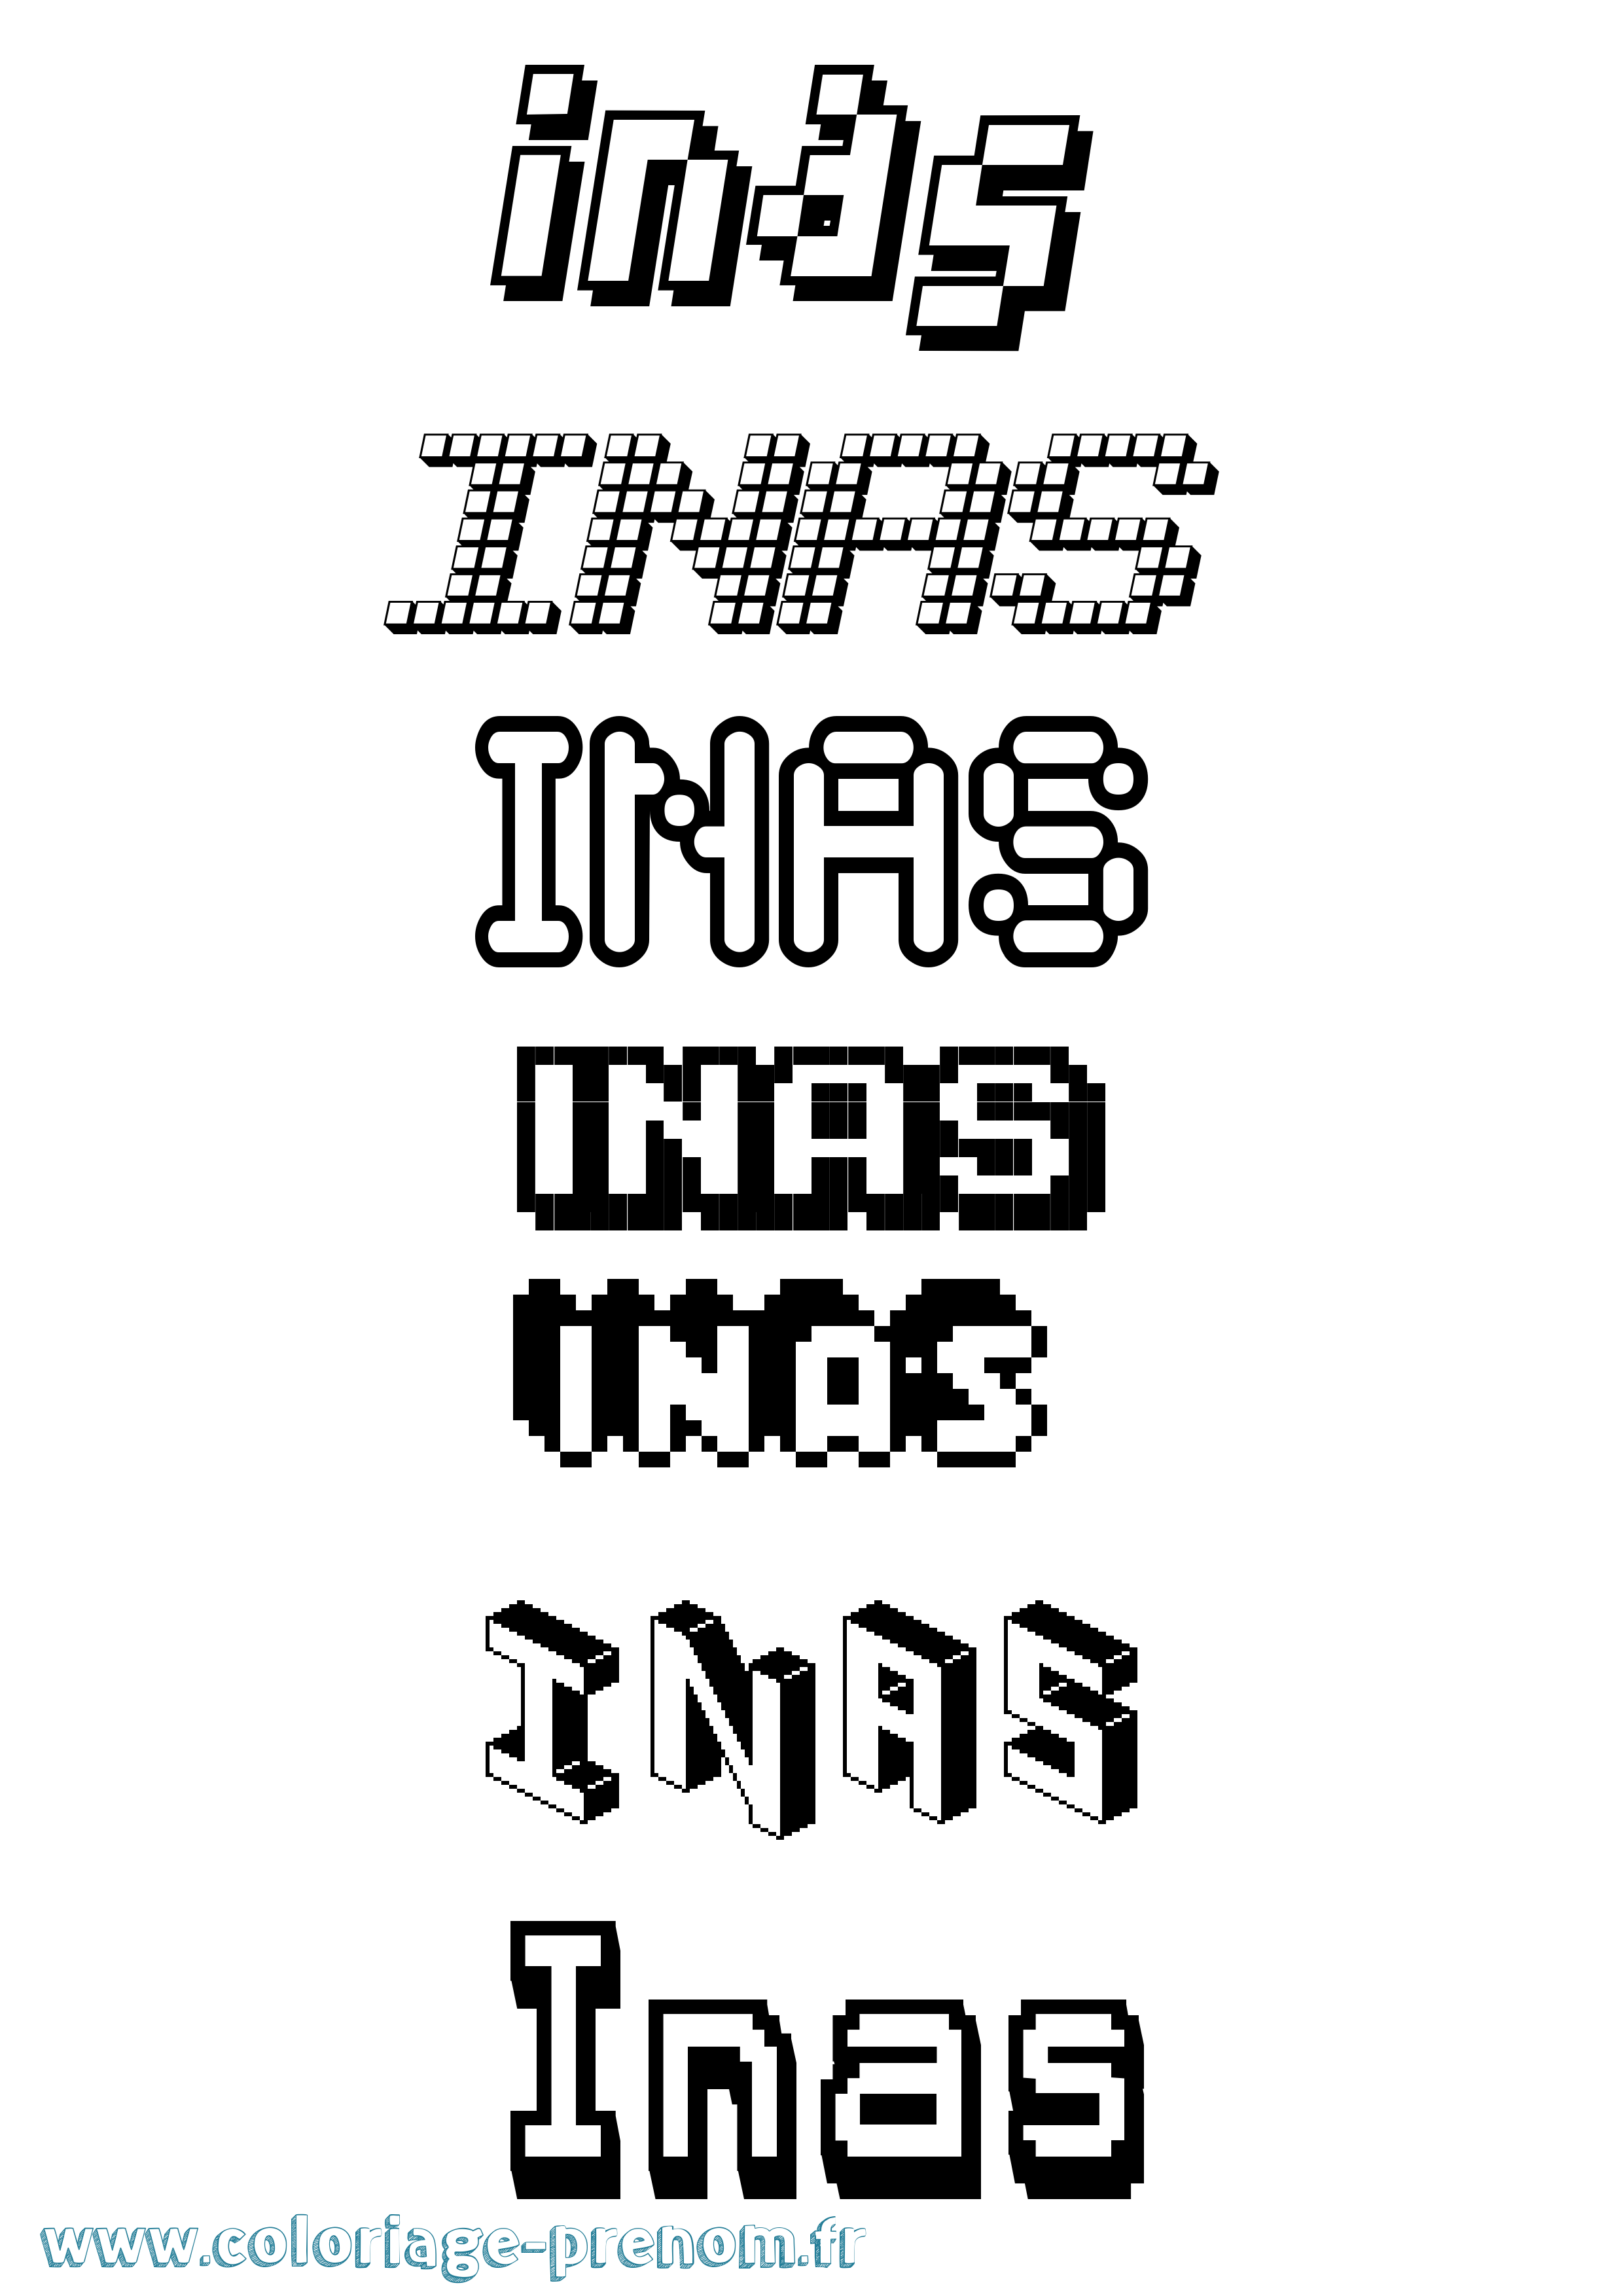 Coloriage prénom Inas Pixel